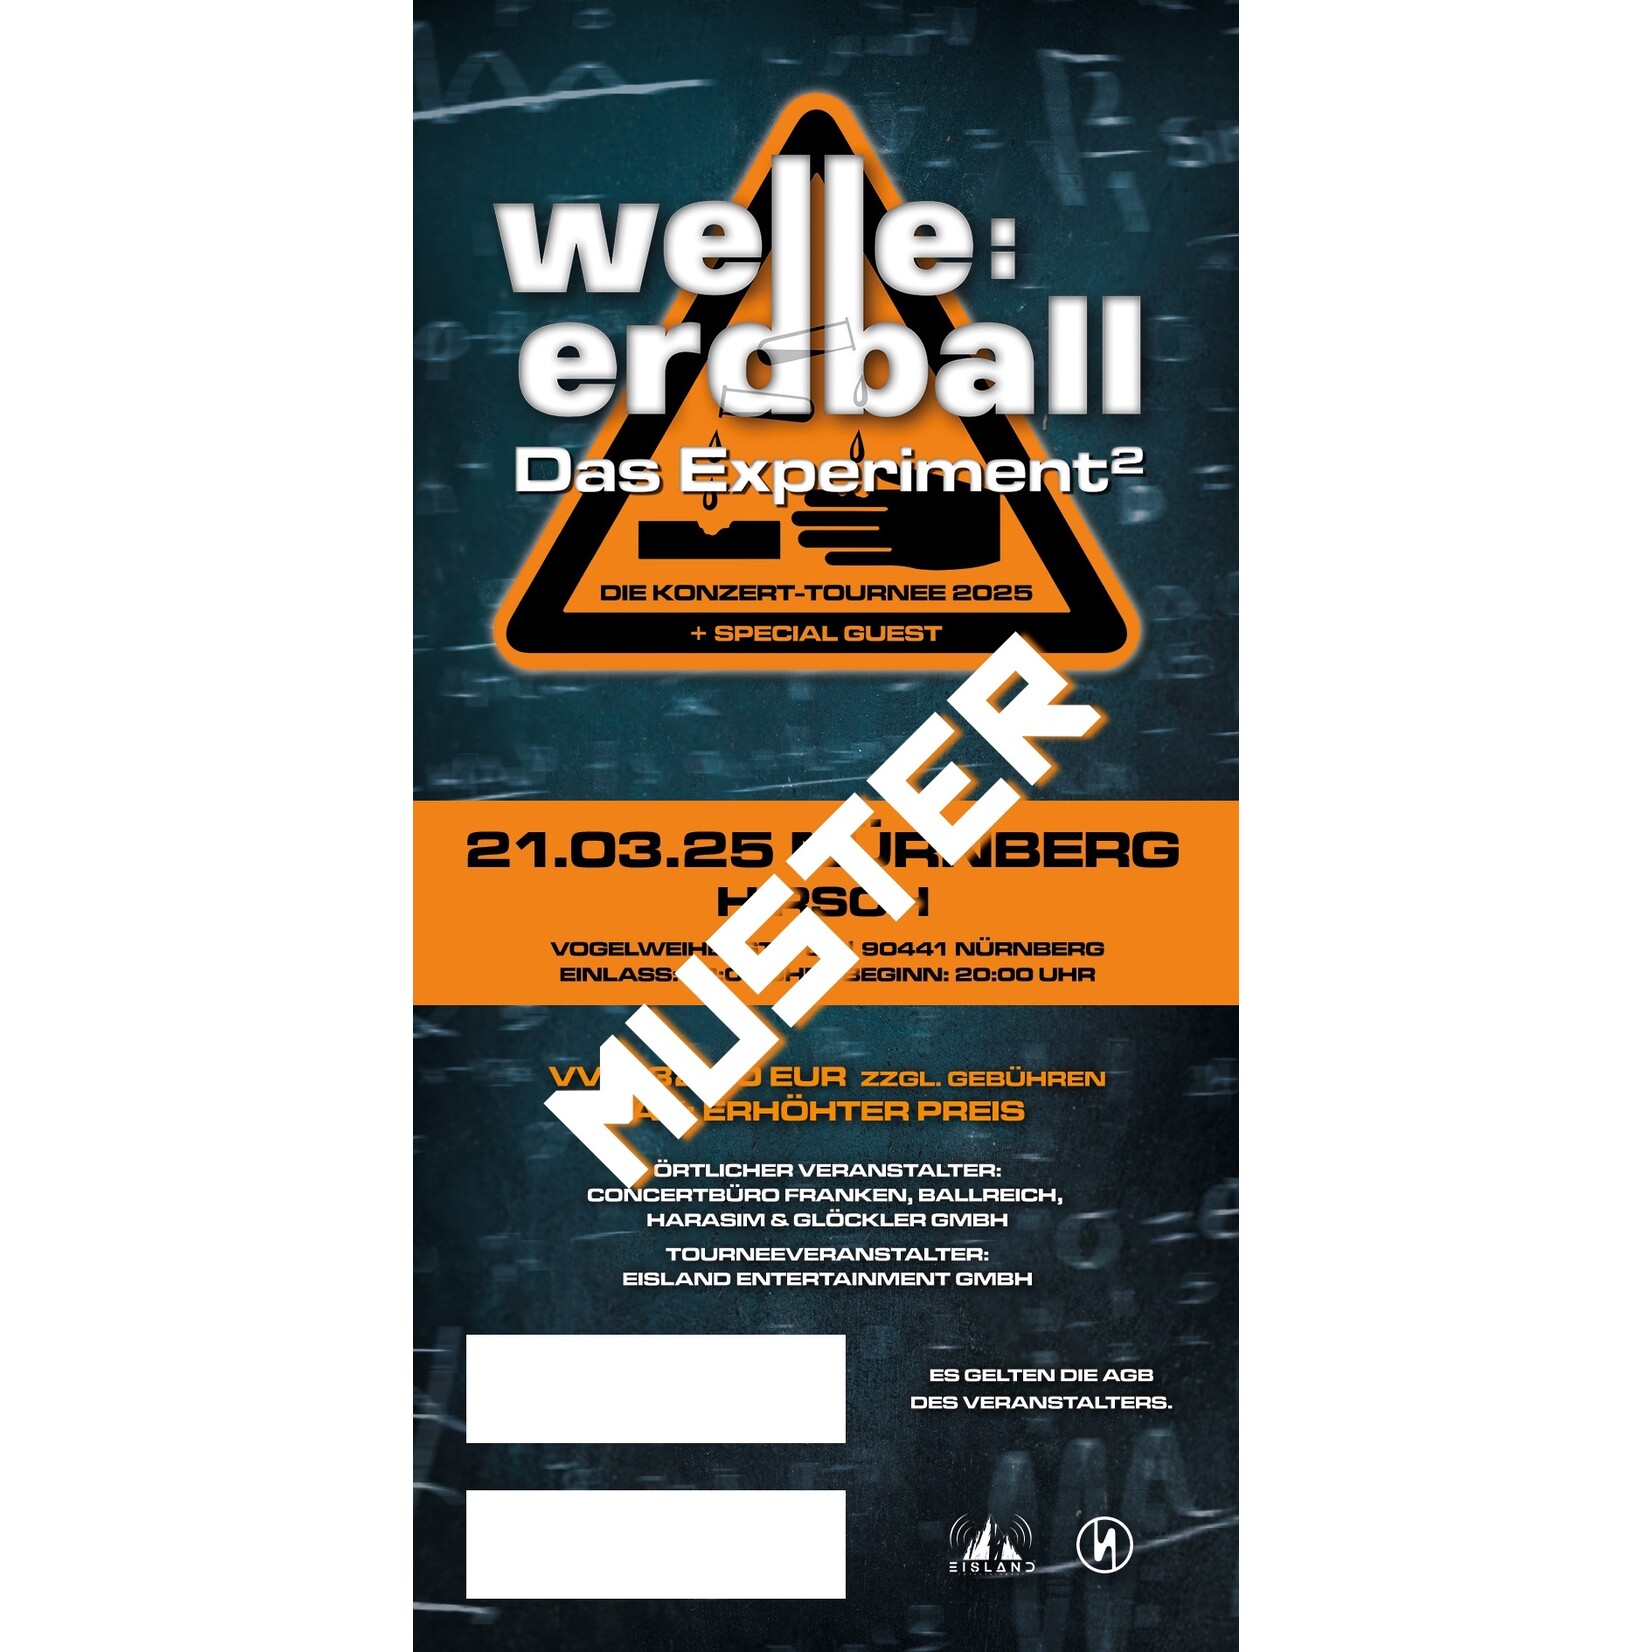 21.03.2025 - NÜRNBERG - WELLE:ERDBALL - DAS EXPERIMENT²